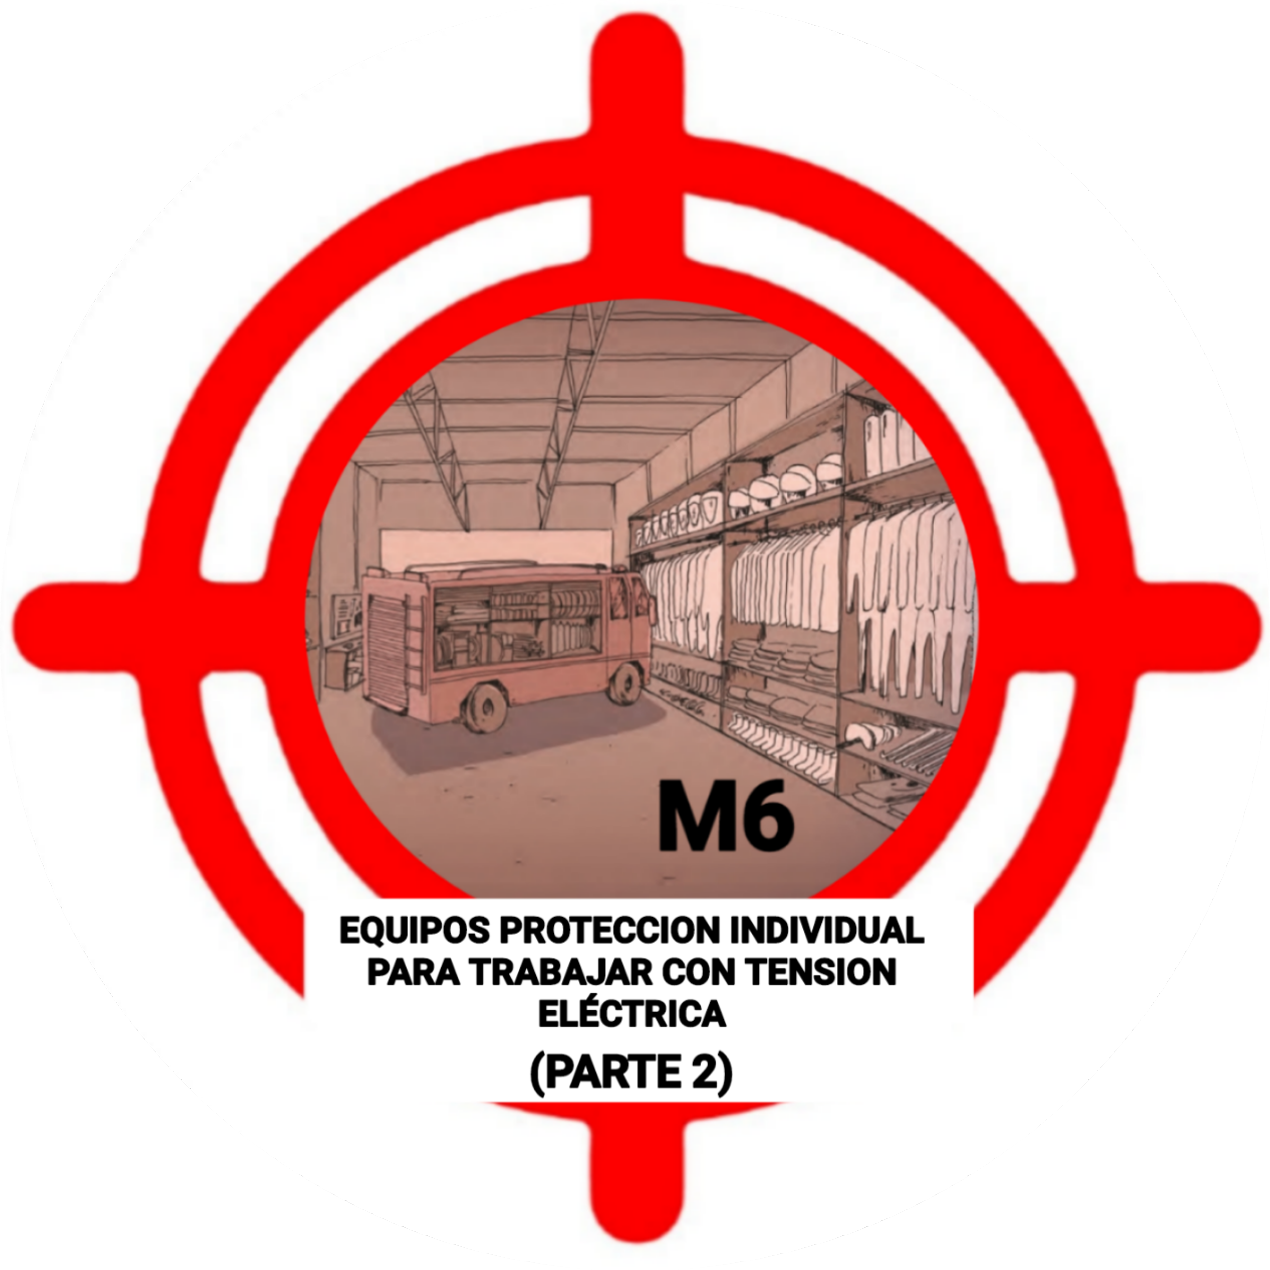 Test M6 CEIS Guadalajara - Equipos Proteccion individual para trabajar con tension eléctrica (Parte 2)